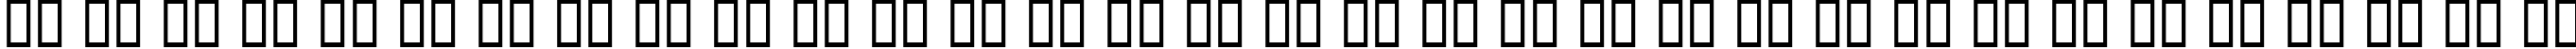 Пример написания русского алфавита шрифтом Haunt AOE